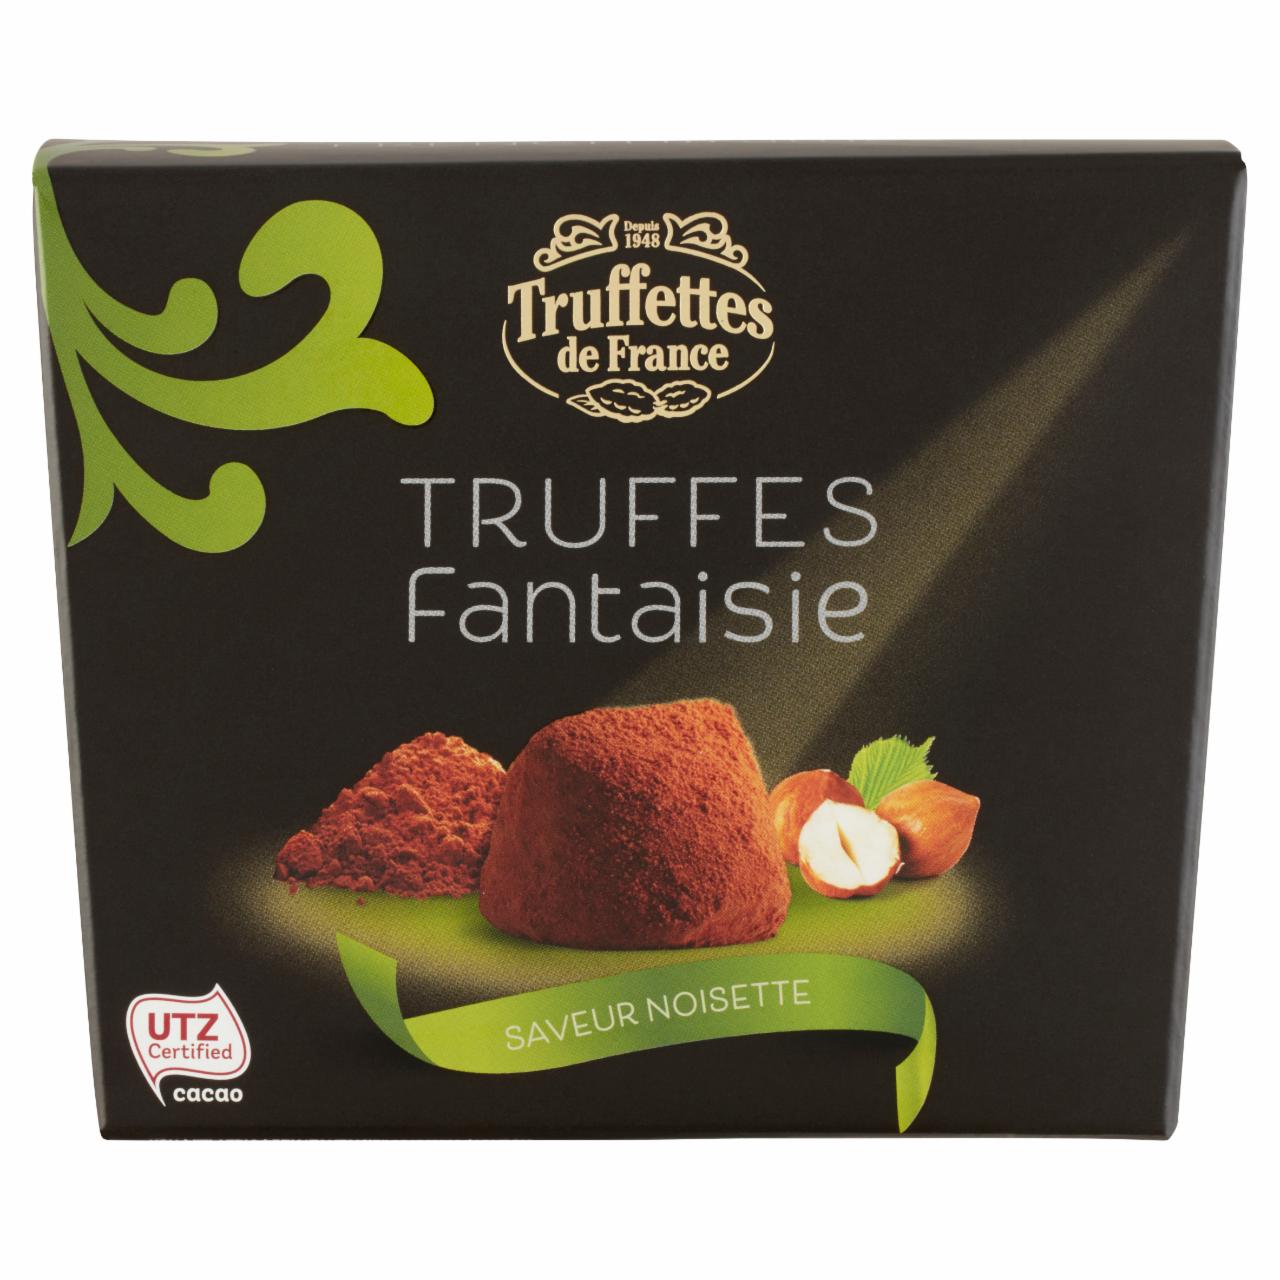 Képek - Truffettes de France kakaóporral borított mogyoró ízesítésű trüffel 200 g